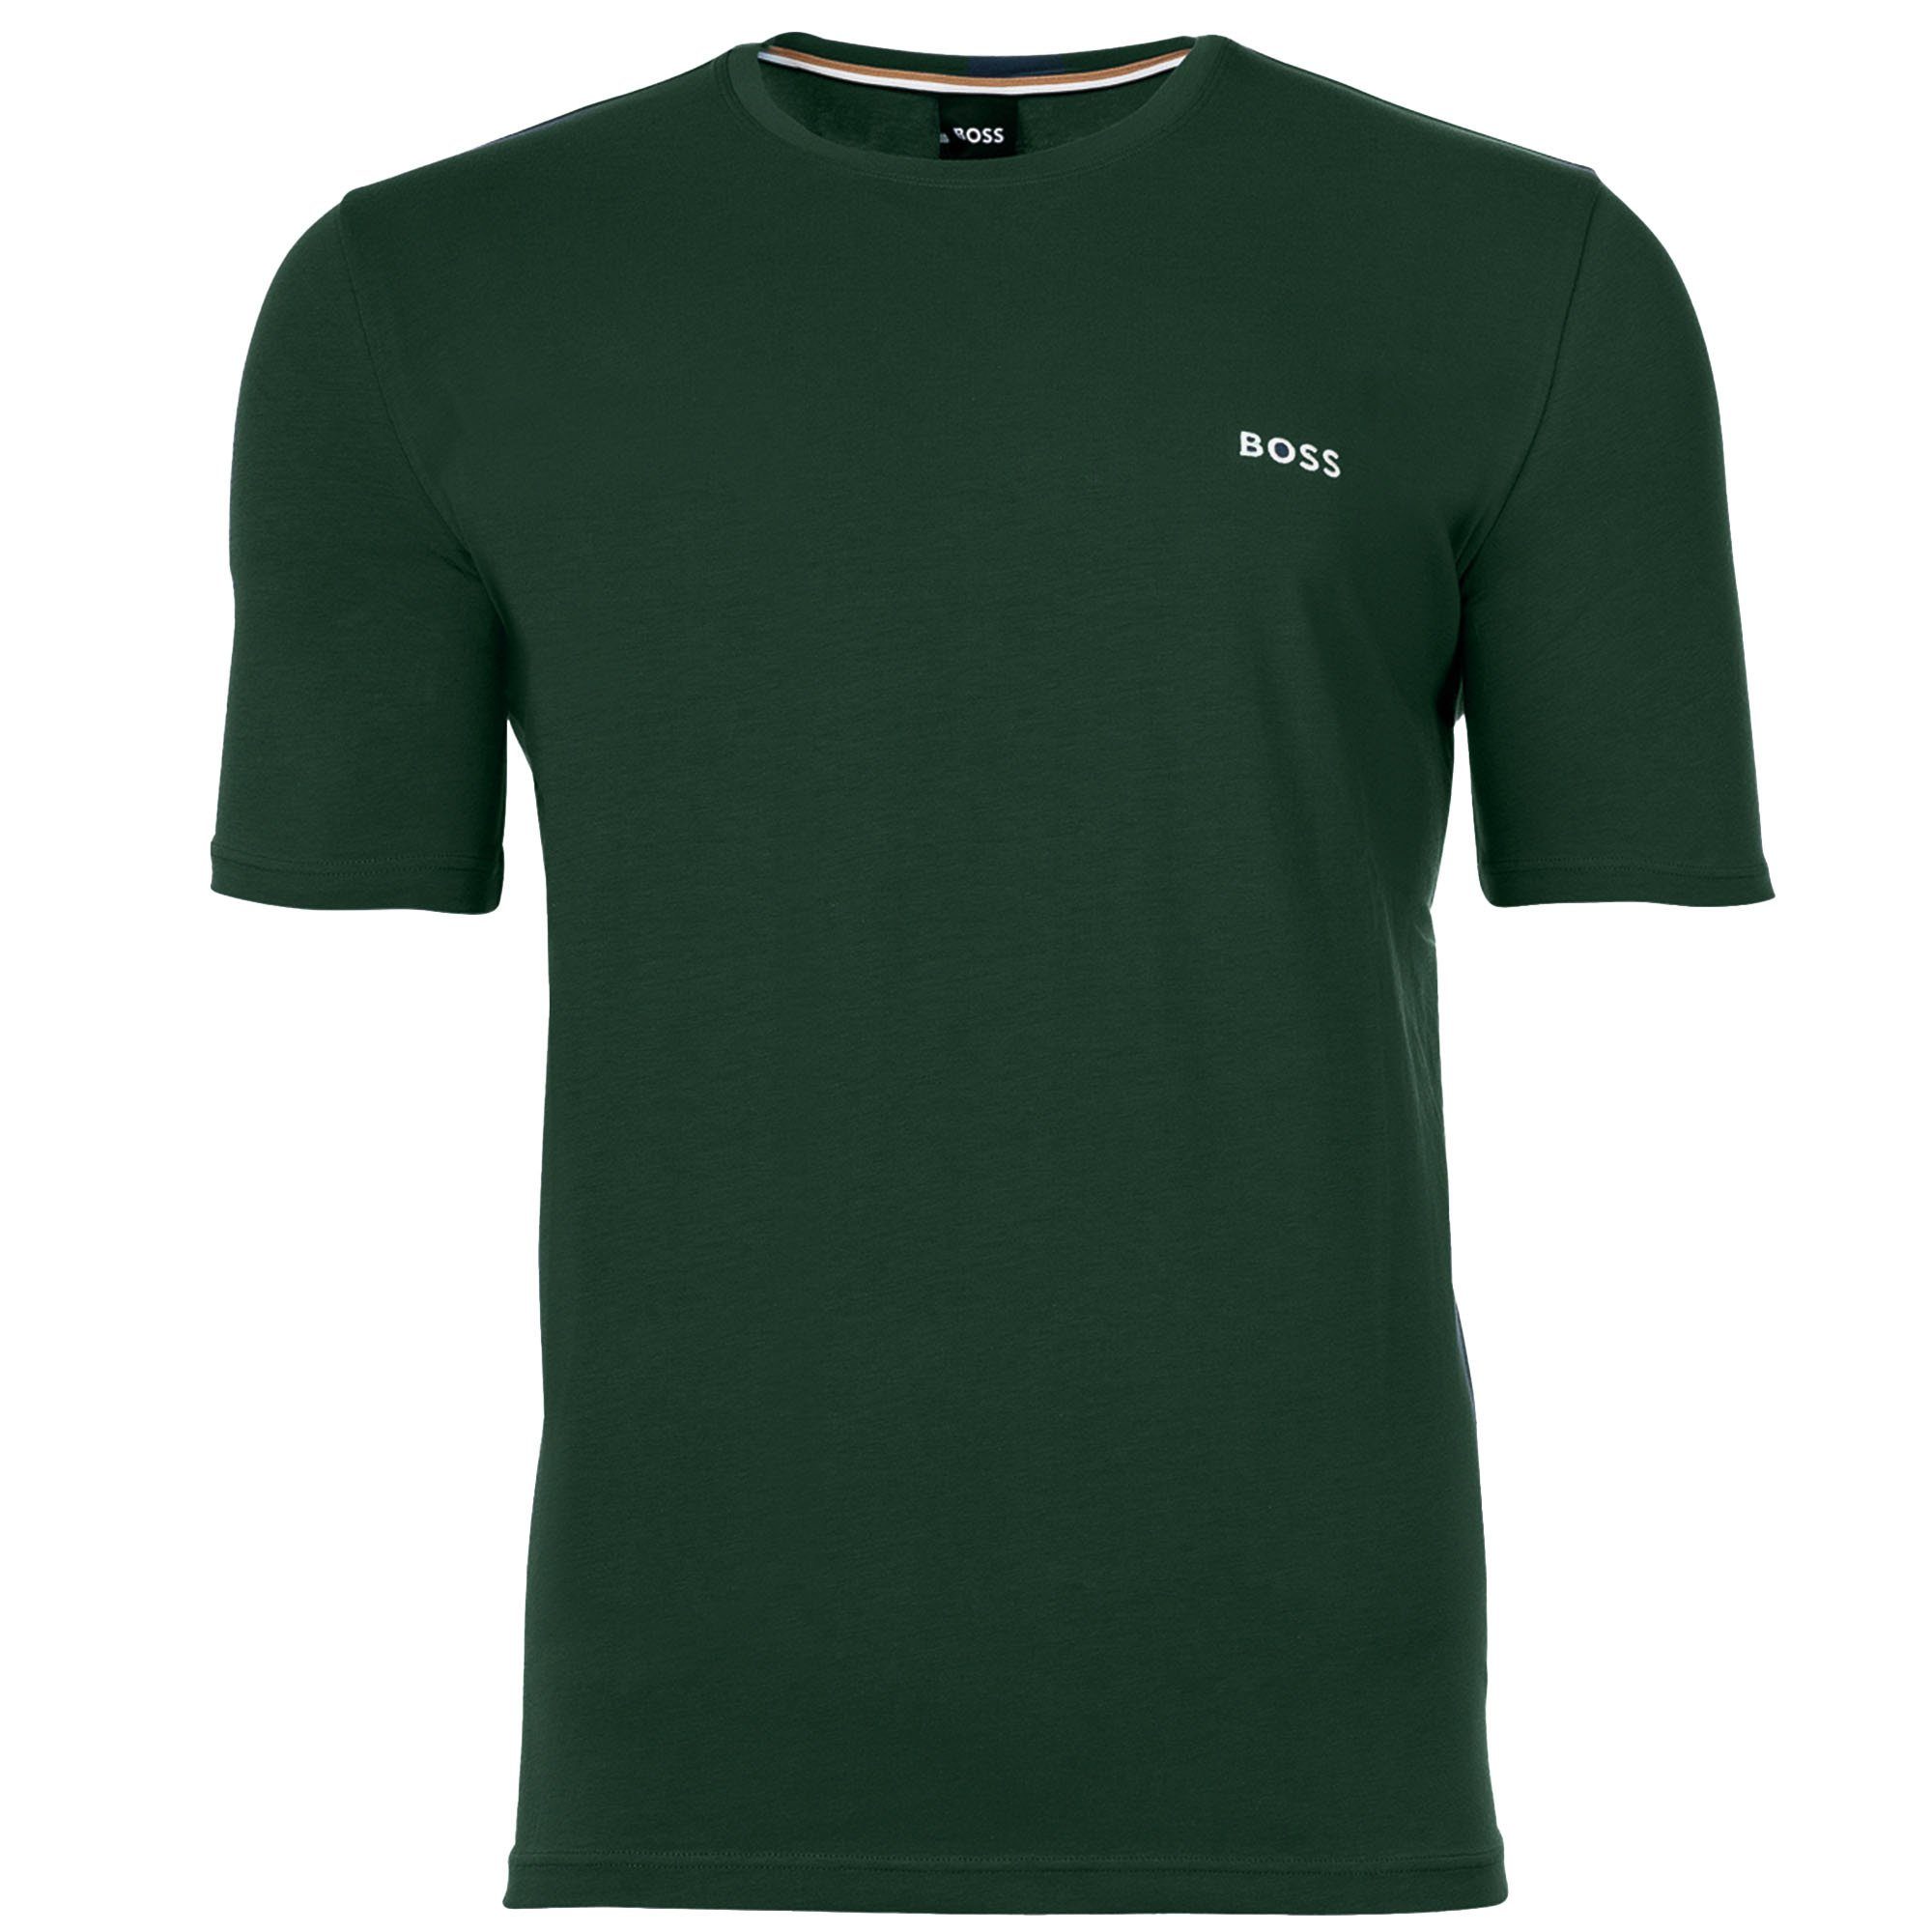 BOSS T-Shirt Herren T-Shirt - Match, Grün Mix Baumwolle Green) & (Open Rundhals